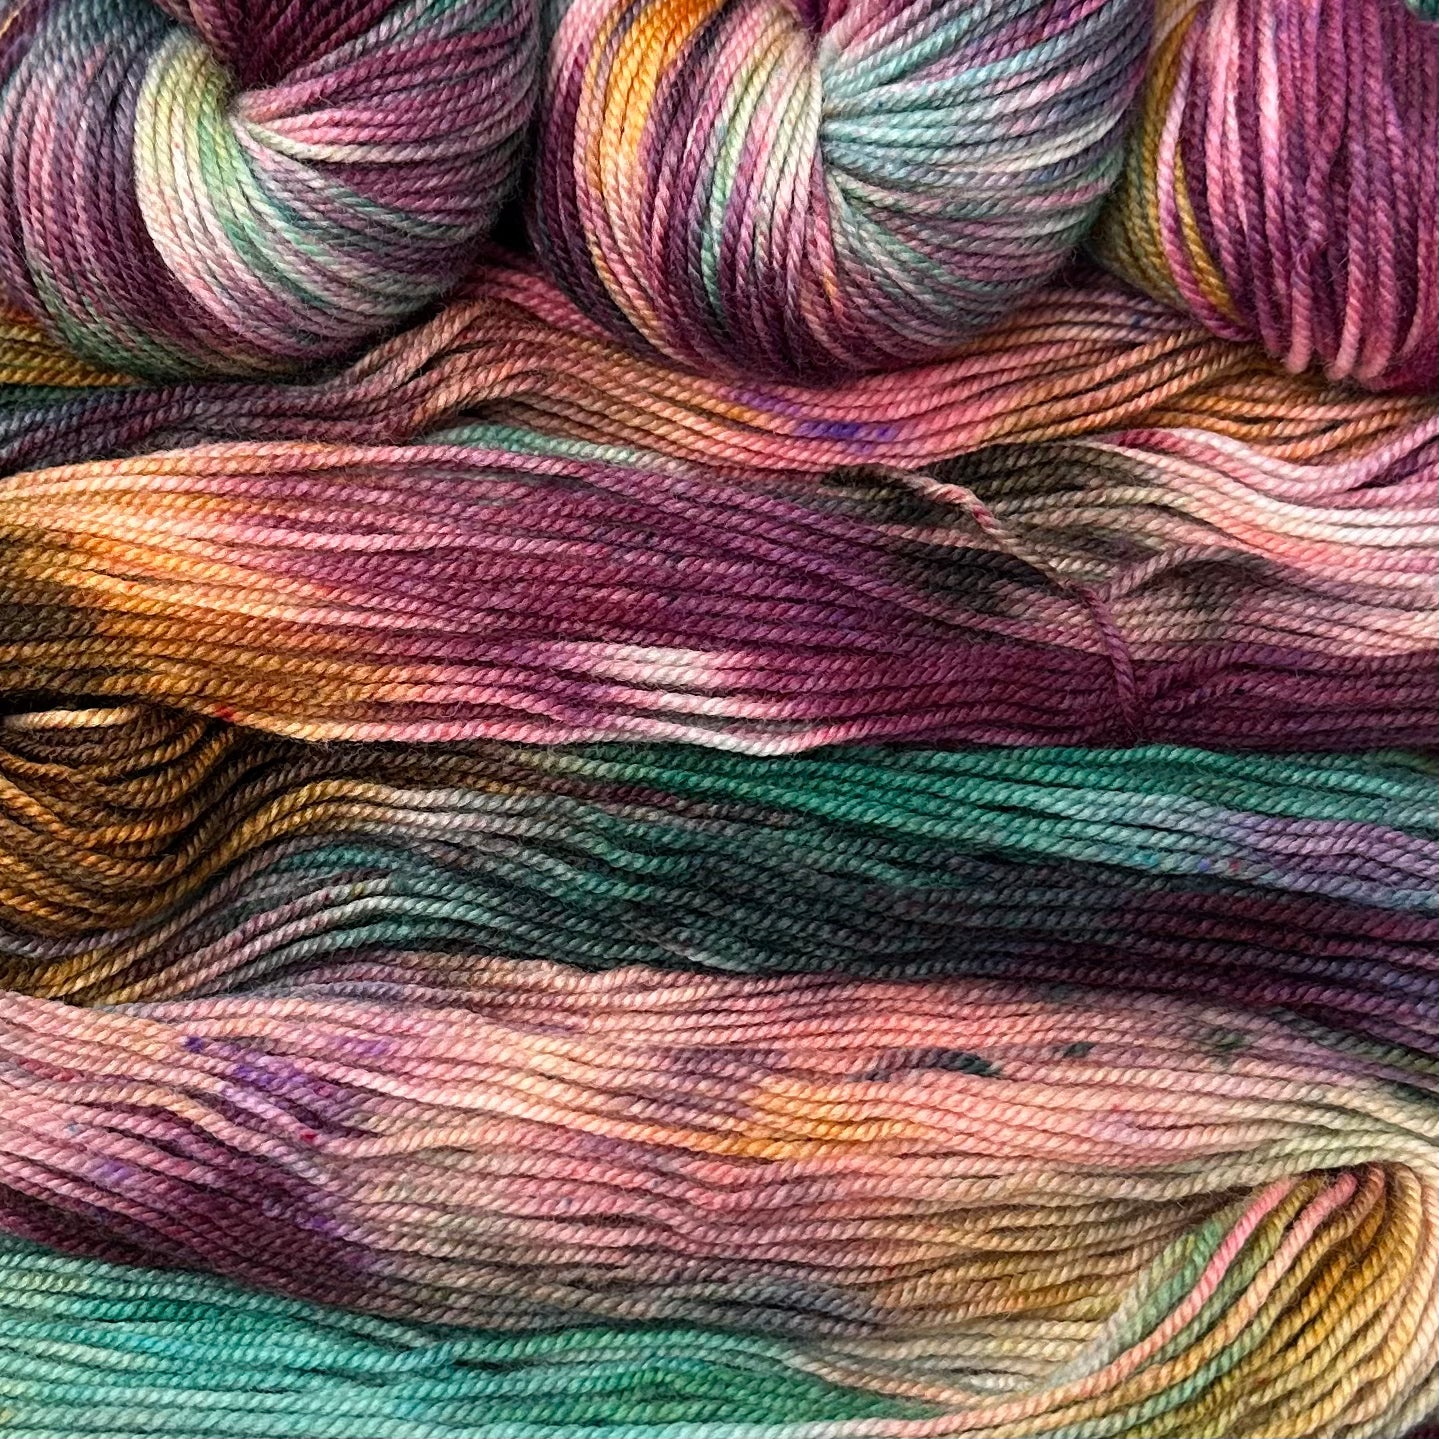 Align sport weight yarn Galaxy – Deep Dyed Yarns